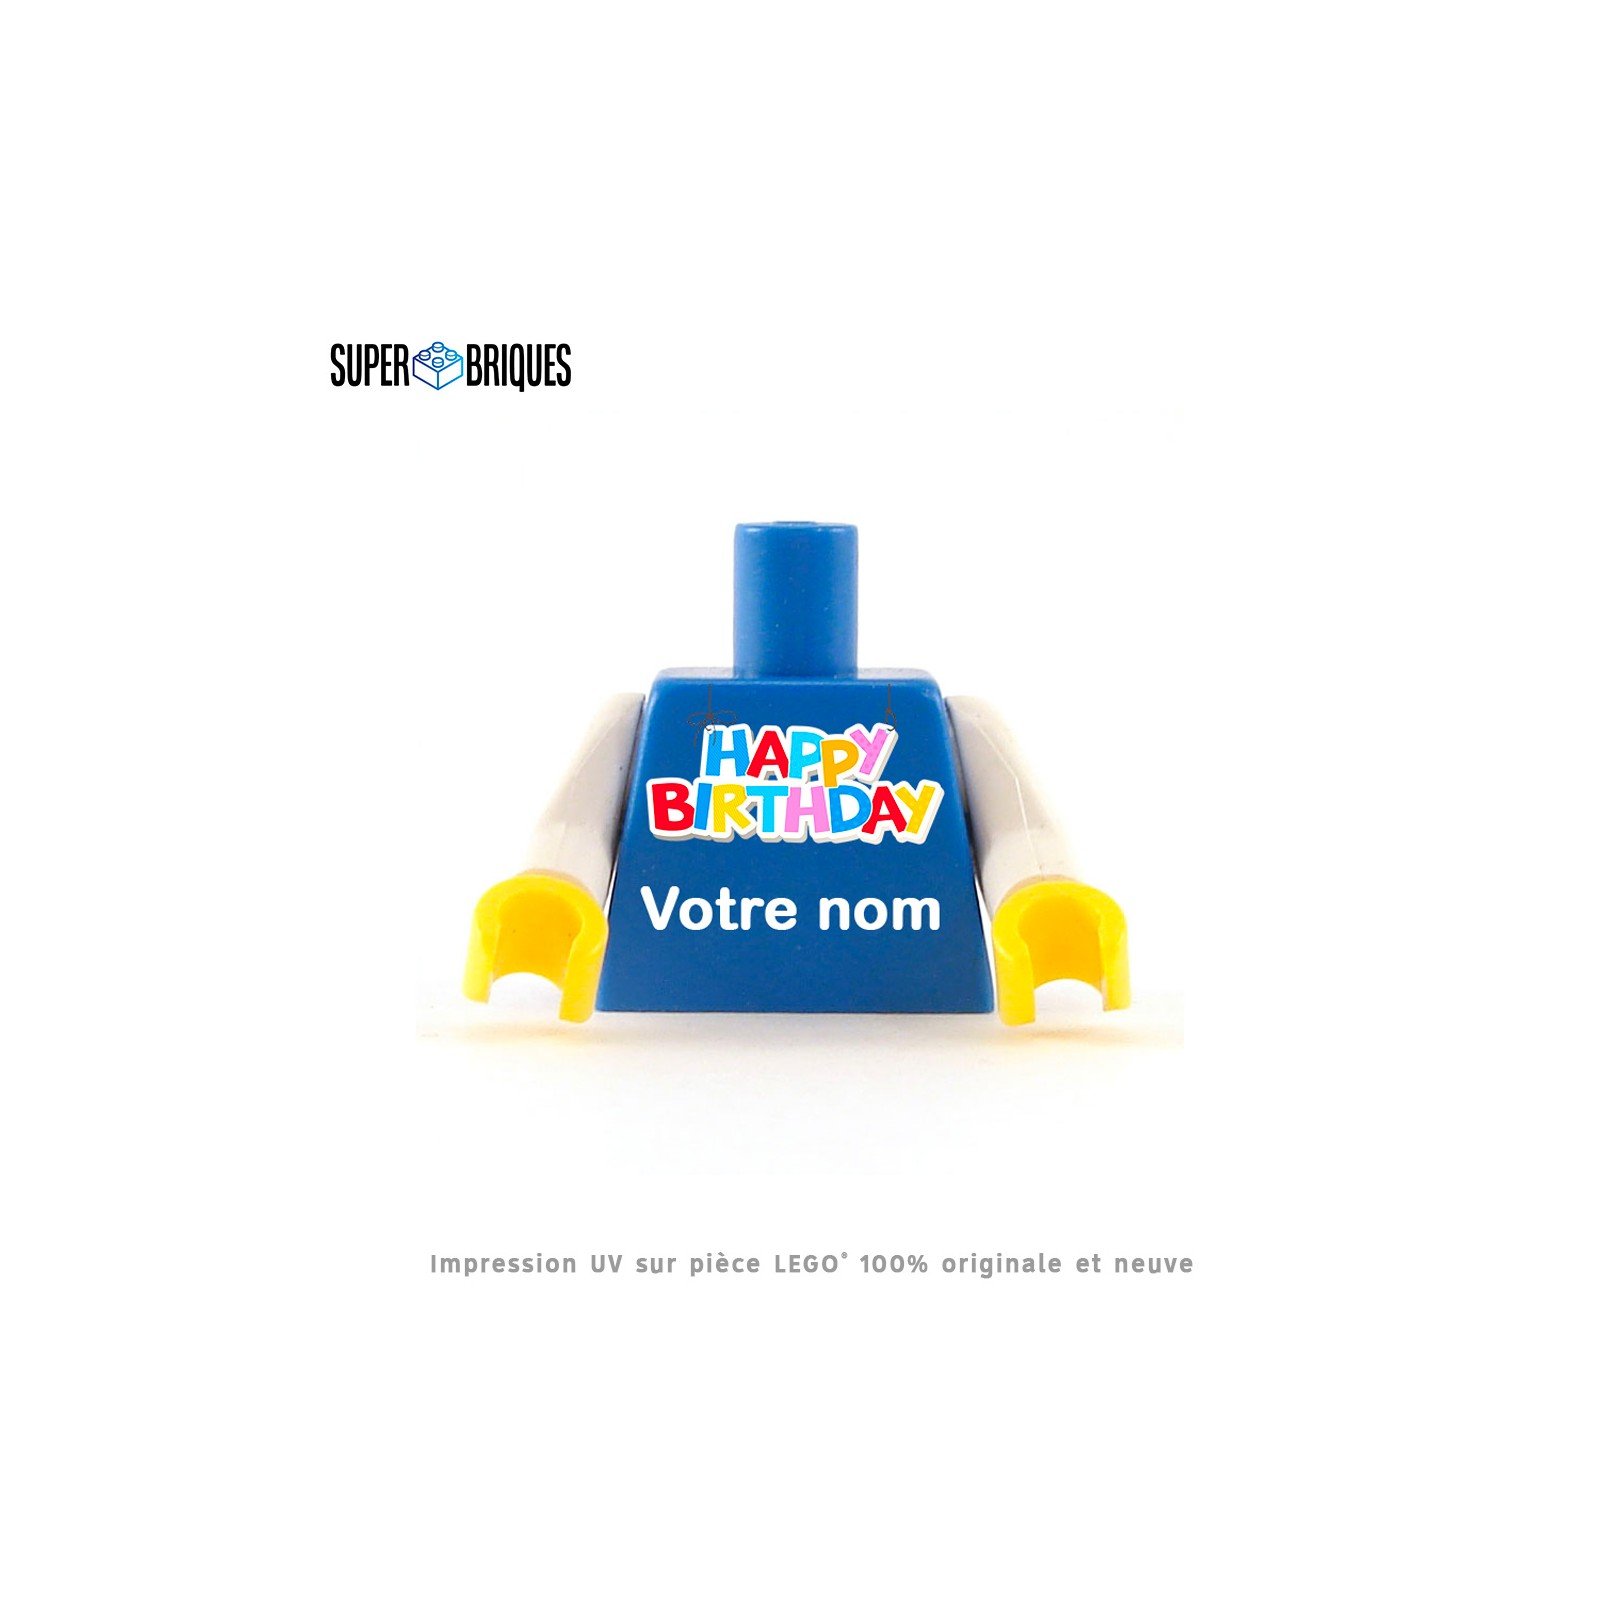 Torse de figurine à personnaliser "Happy Birthday" - Pièce LEGO® customisée